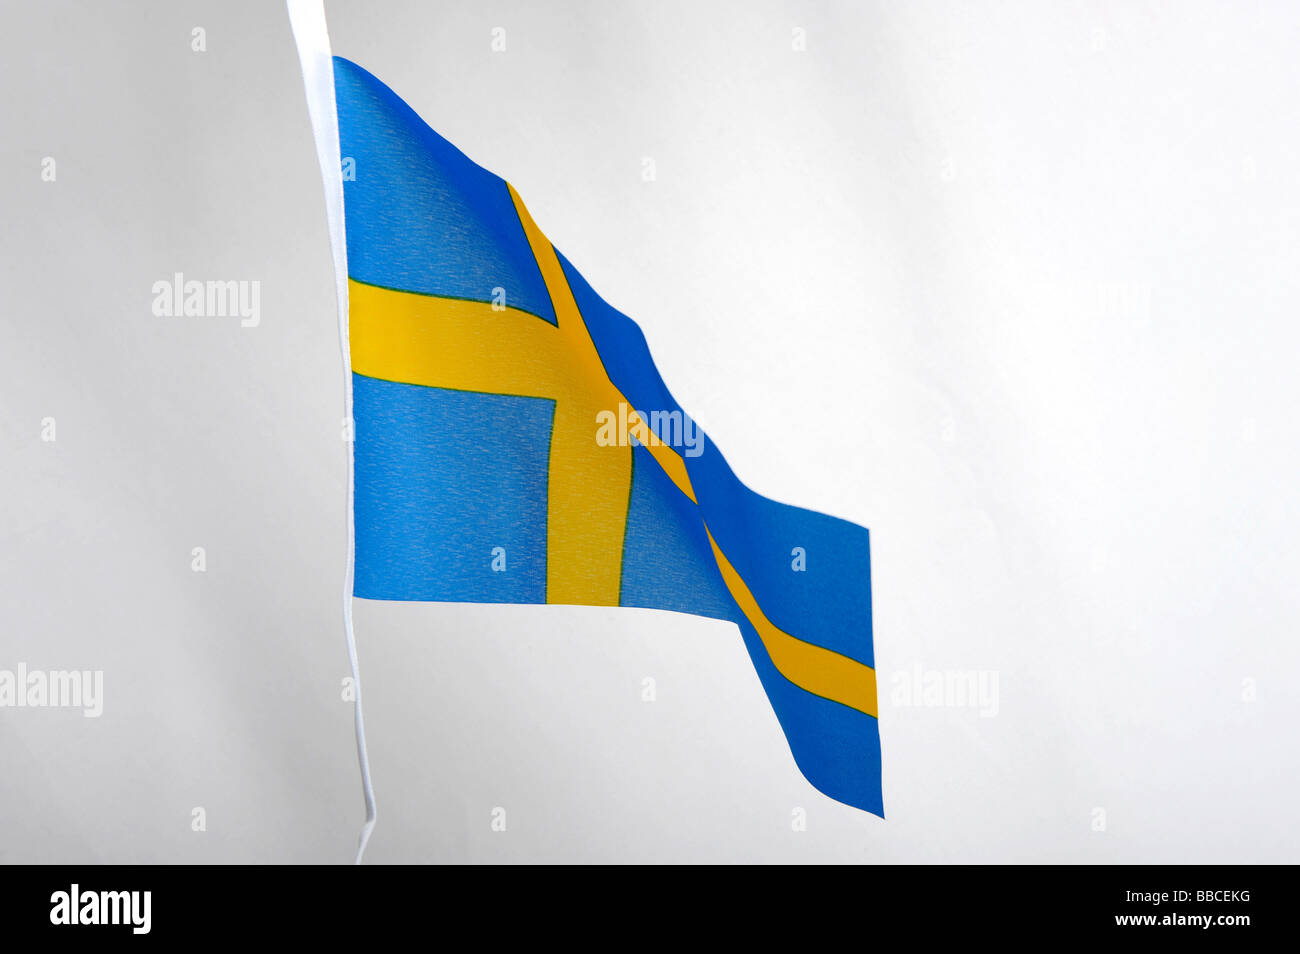 Bandiera nazionale della Svezia: croce gialla su sfondo blu Foto stock -  Alamy